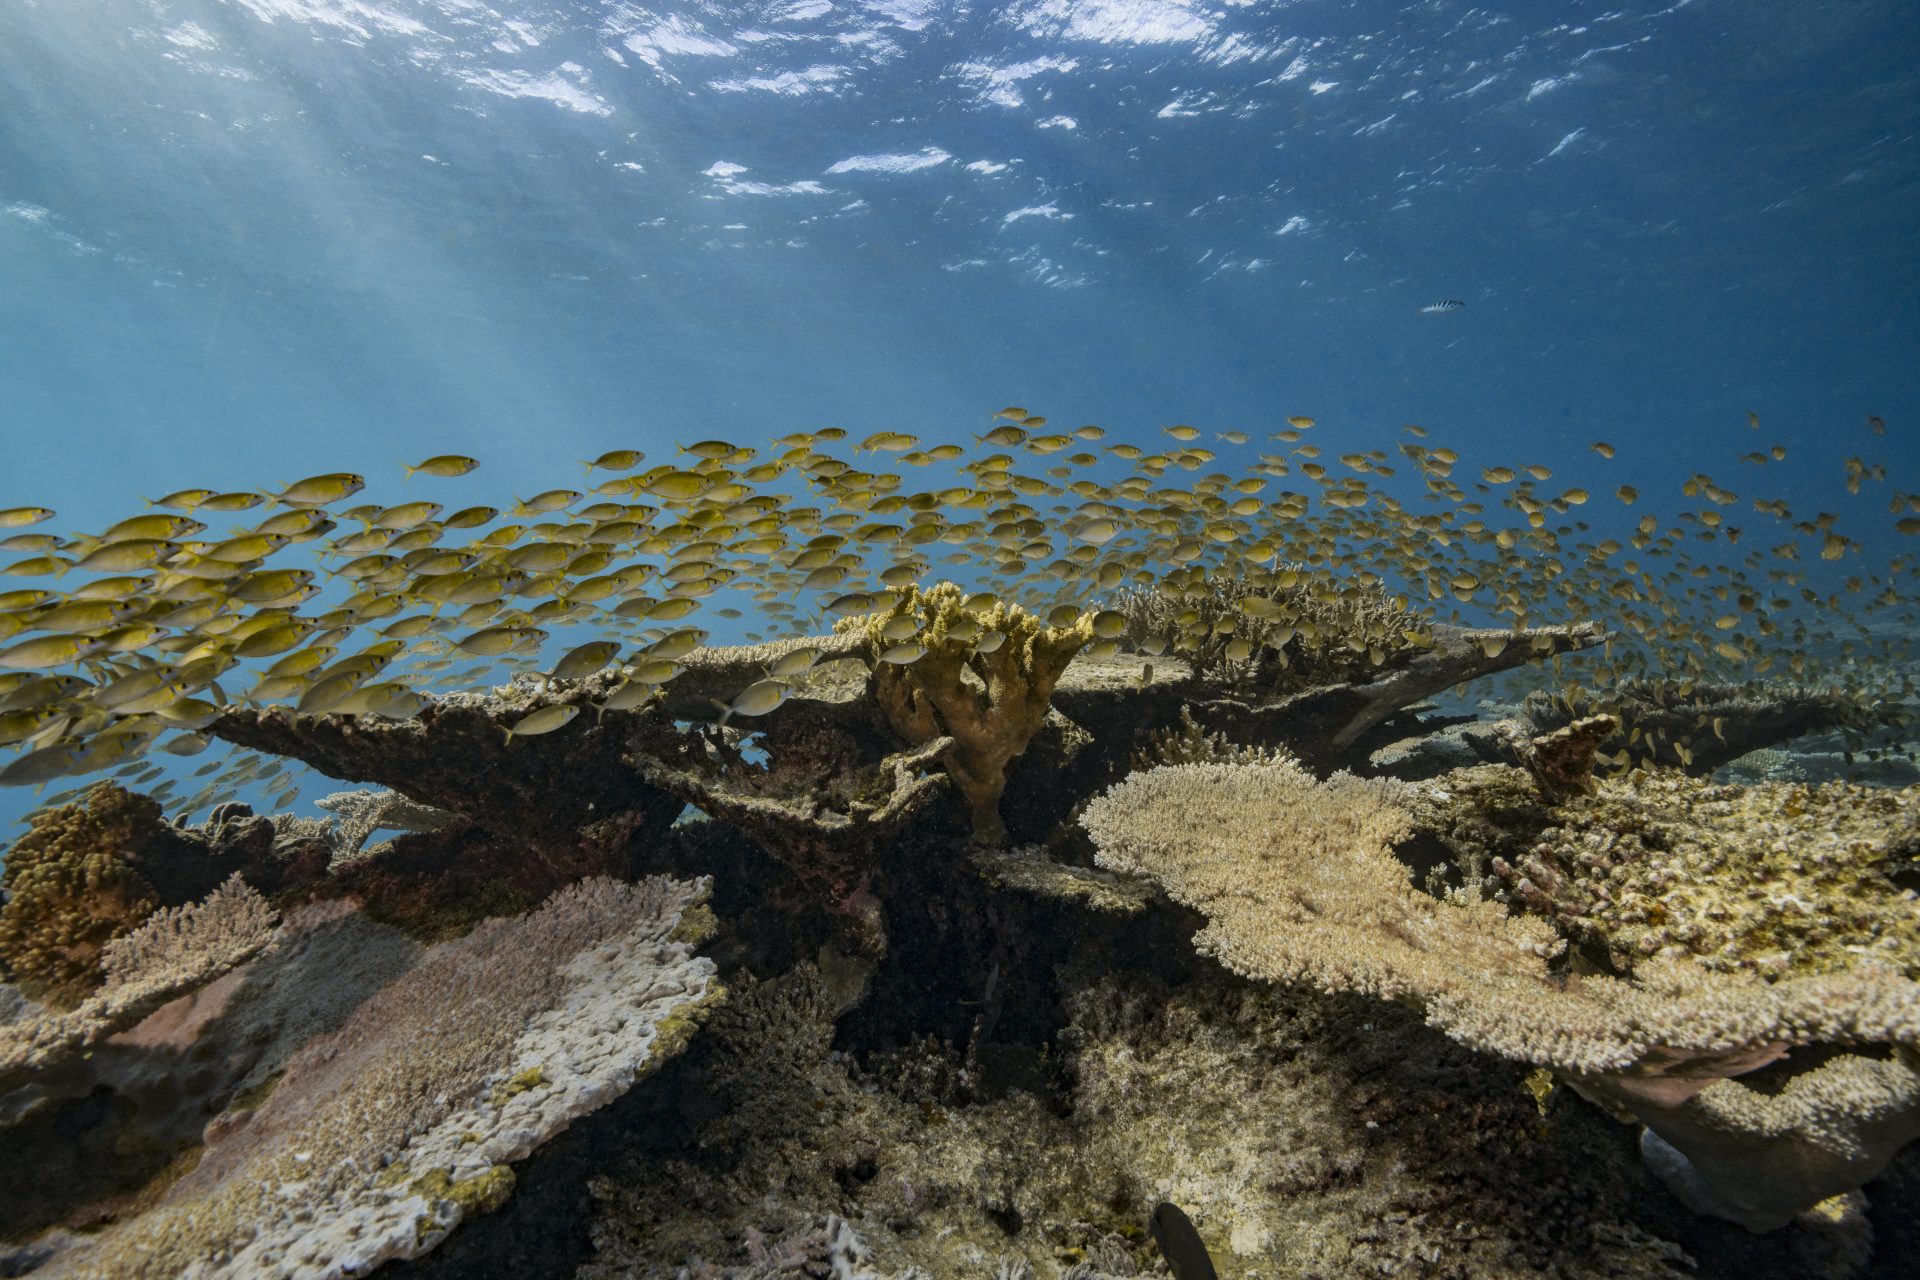 Peligro de ciguatera por perforación del arrecife